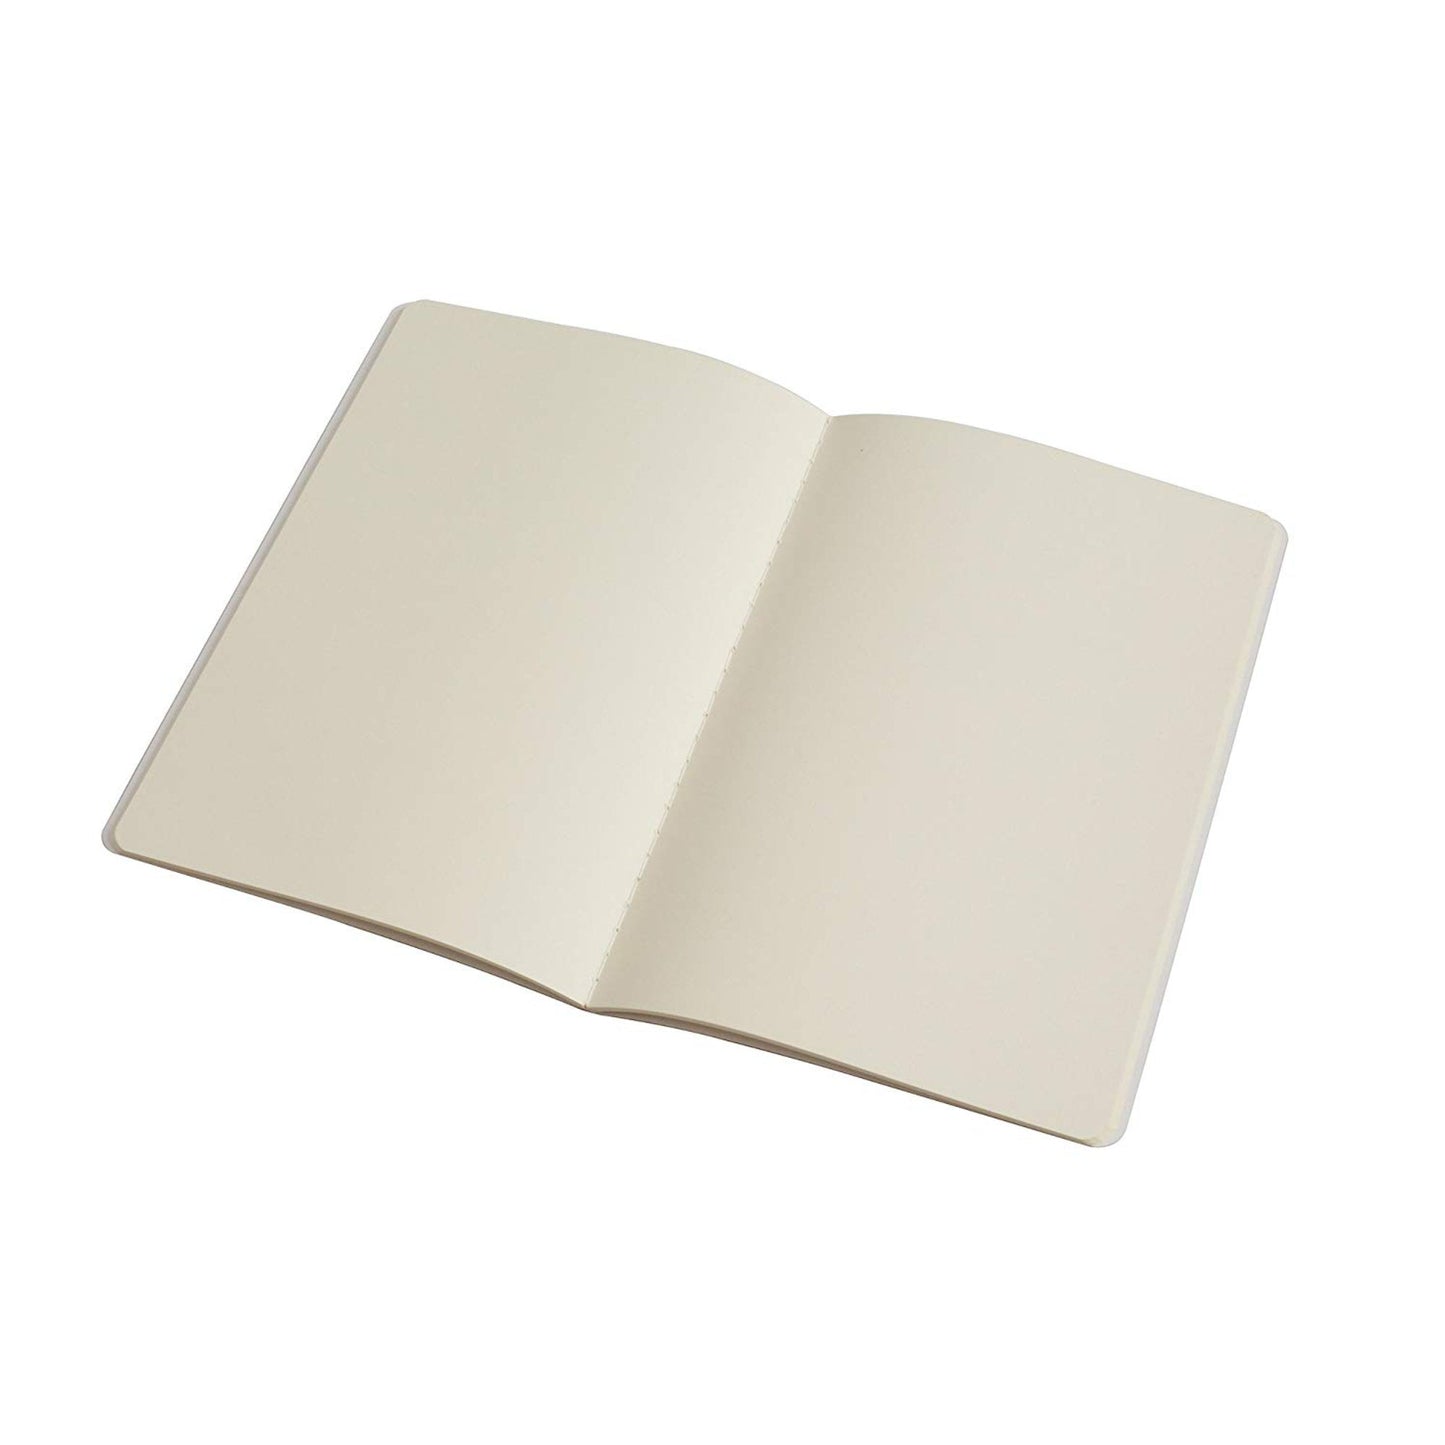 PinkPolish Design Notebook "Cool Friends" Polar Bear Inspired Notebook / Sketchbook / Journal